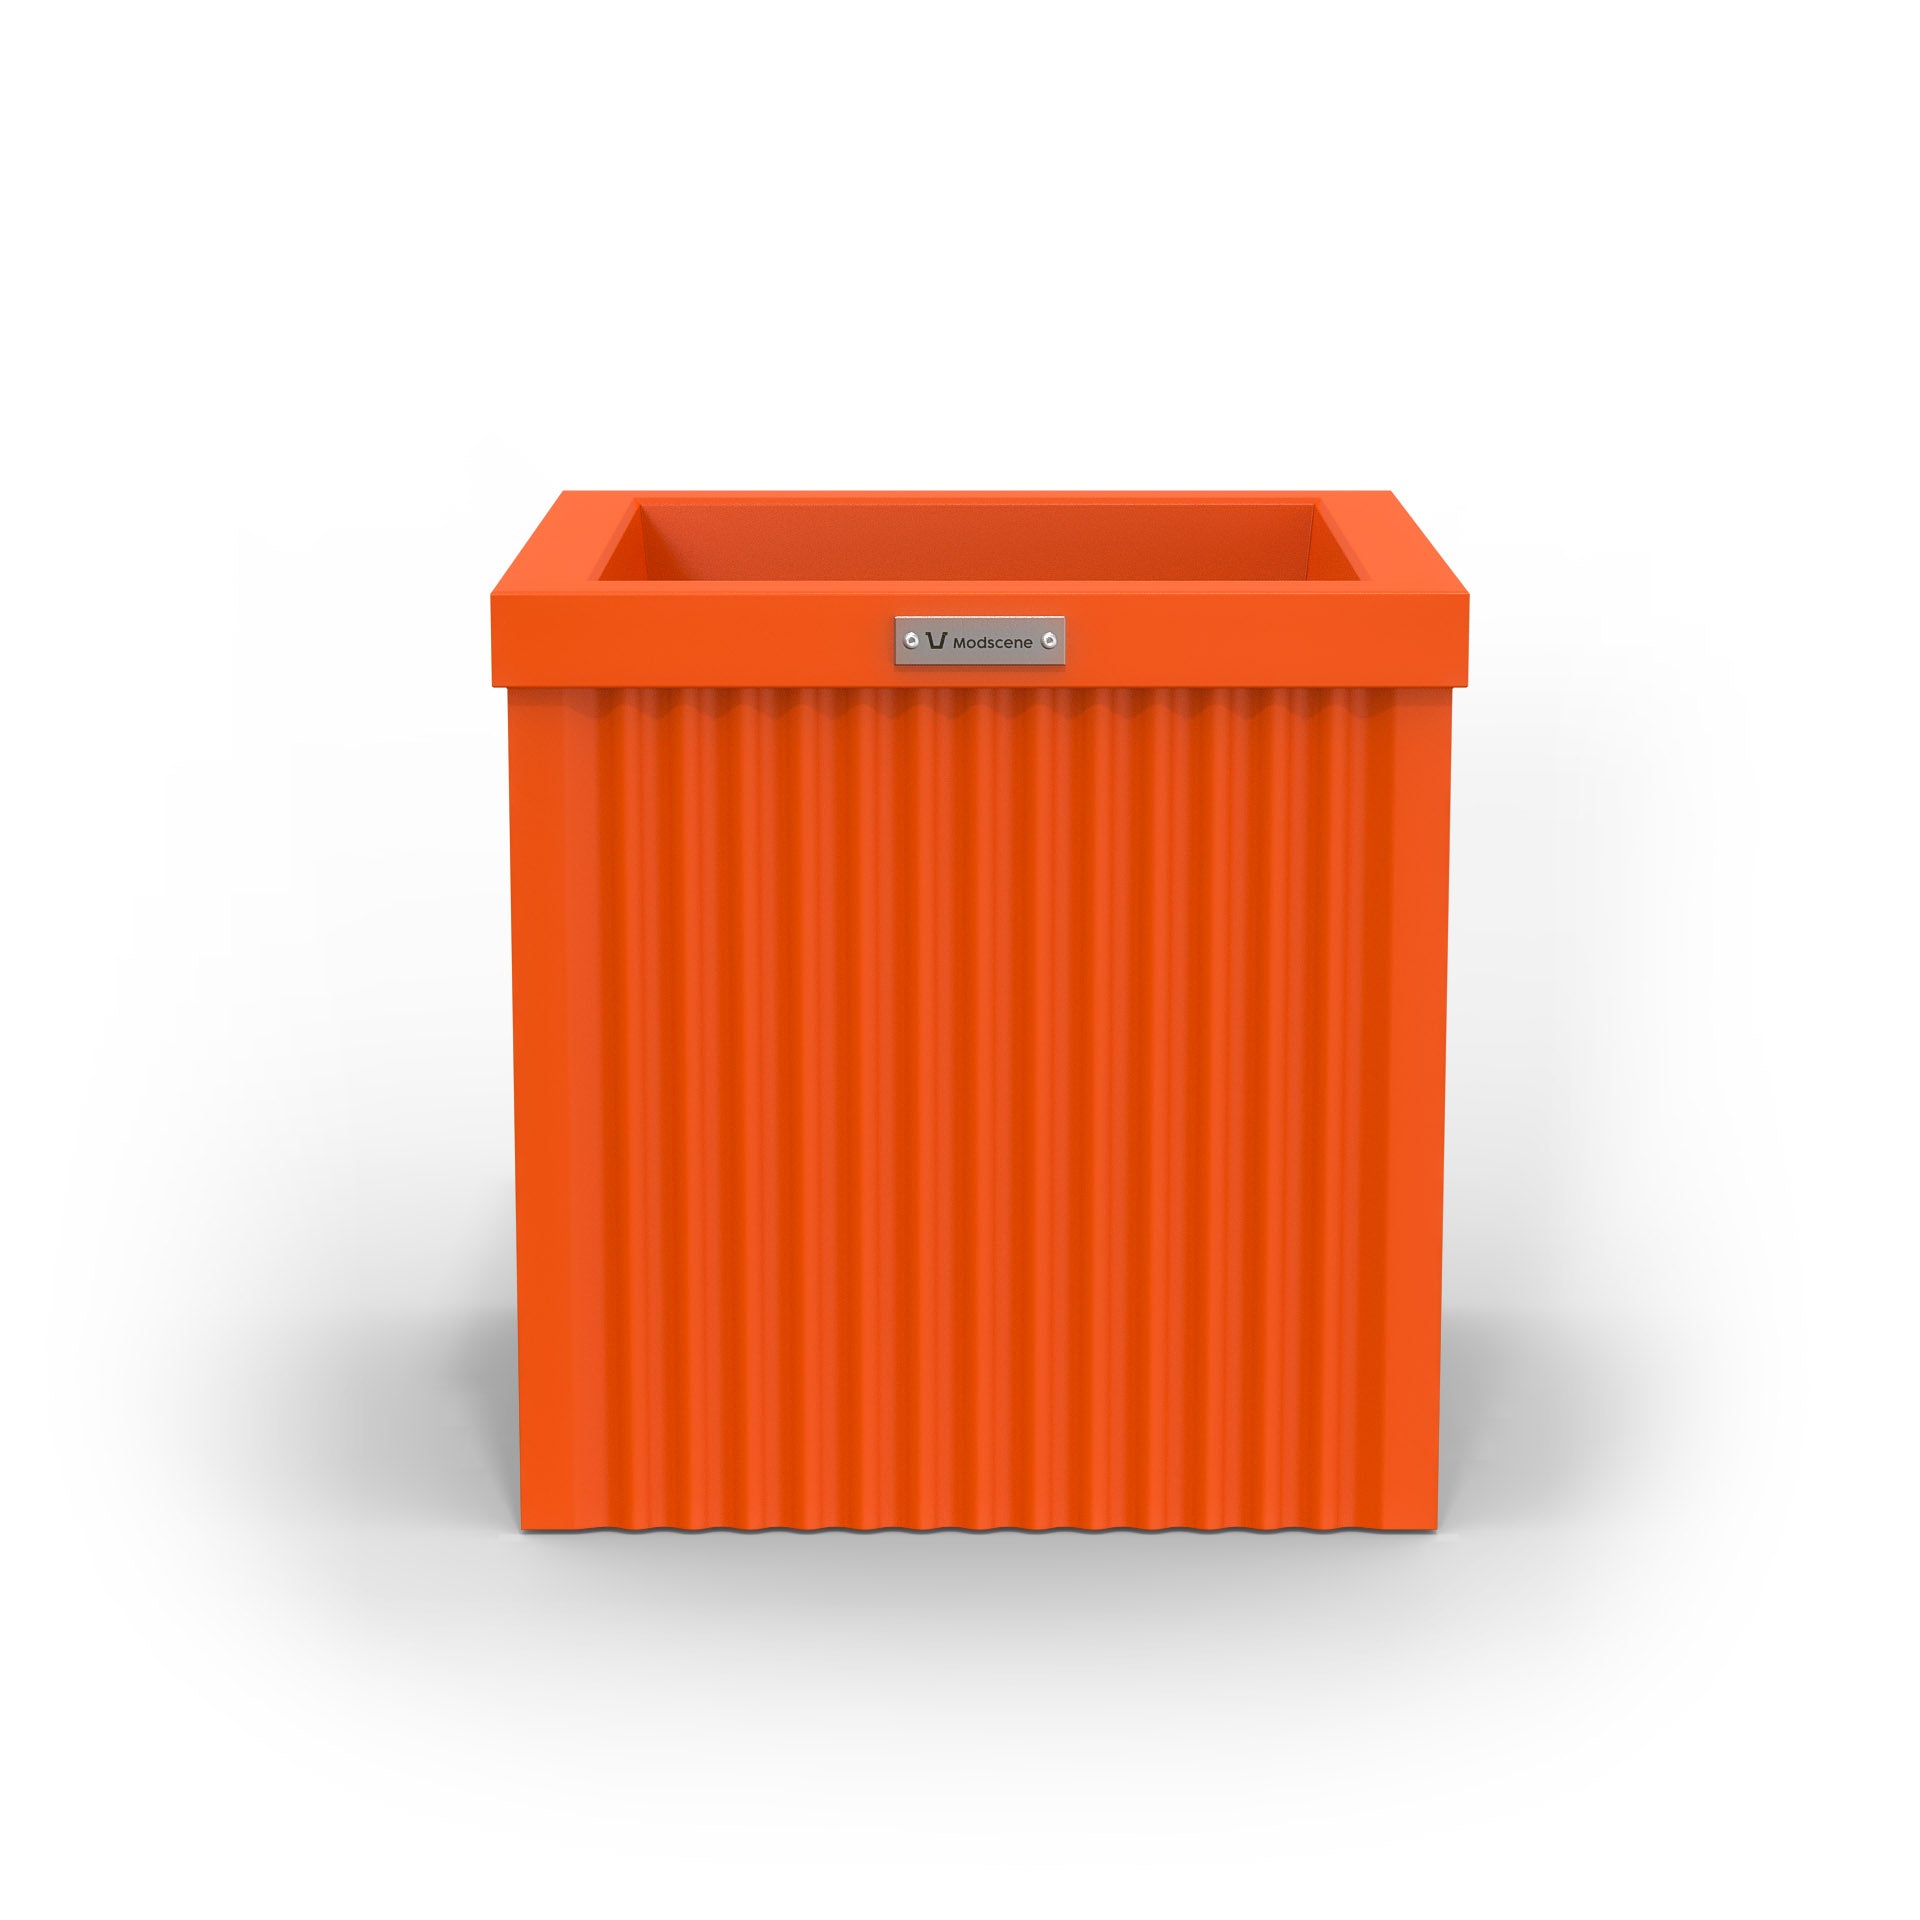 A corrugated square planter pot. The pot planter is orange in colour.